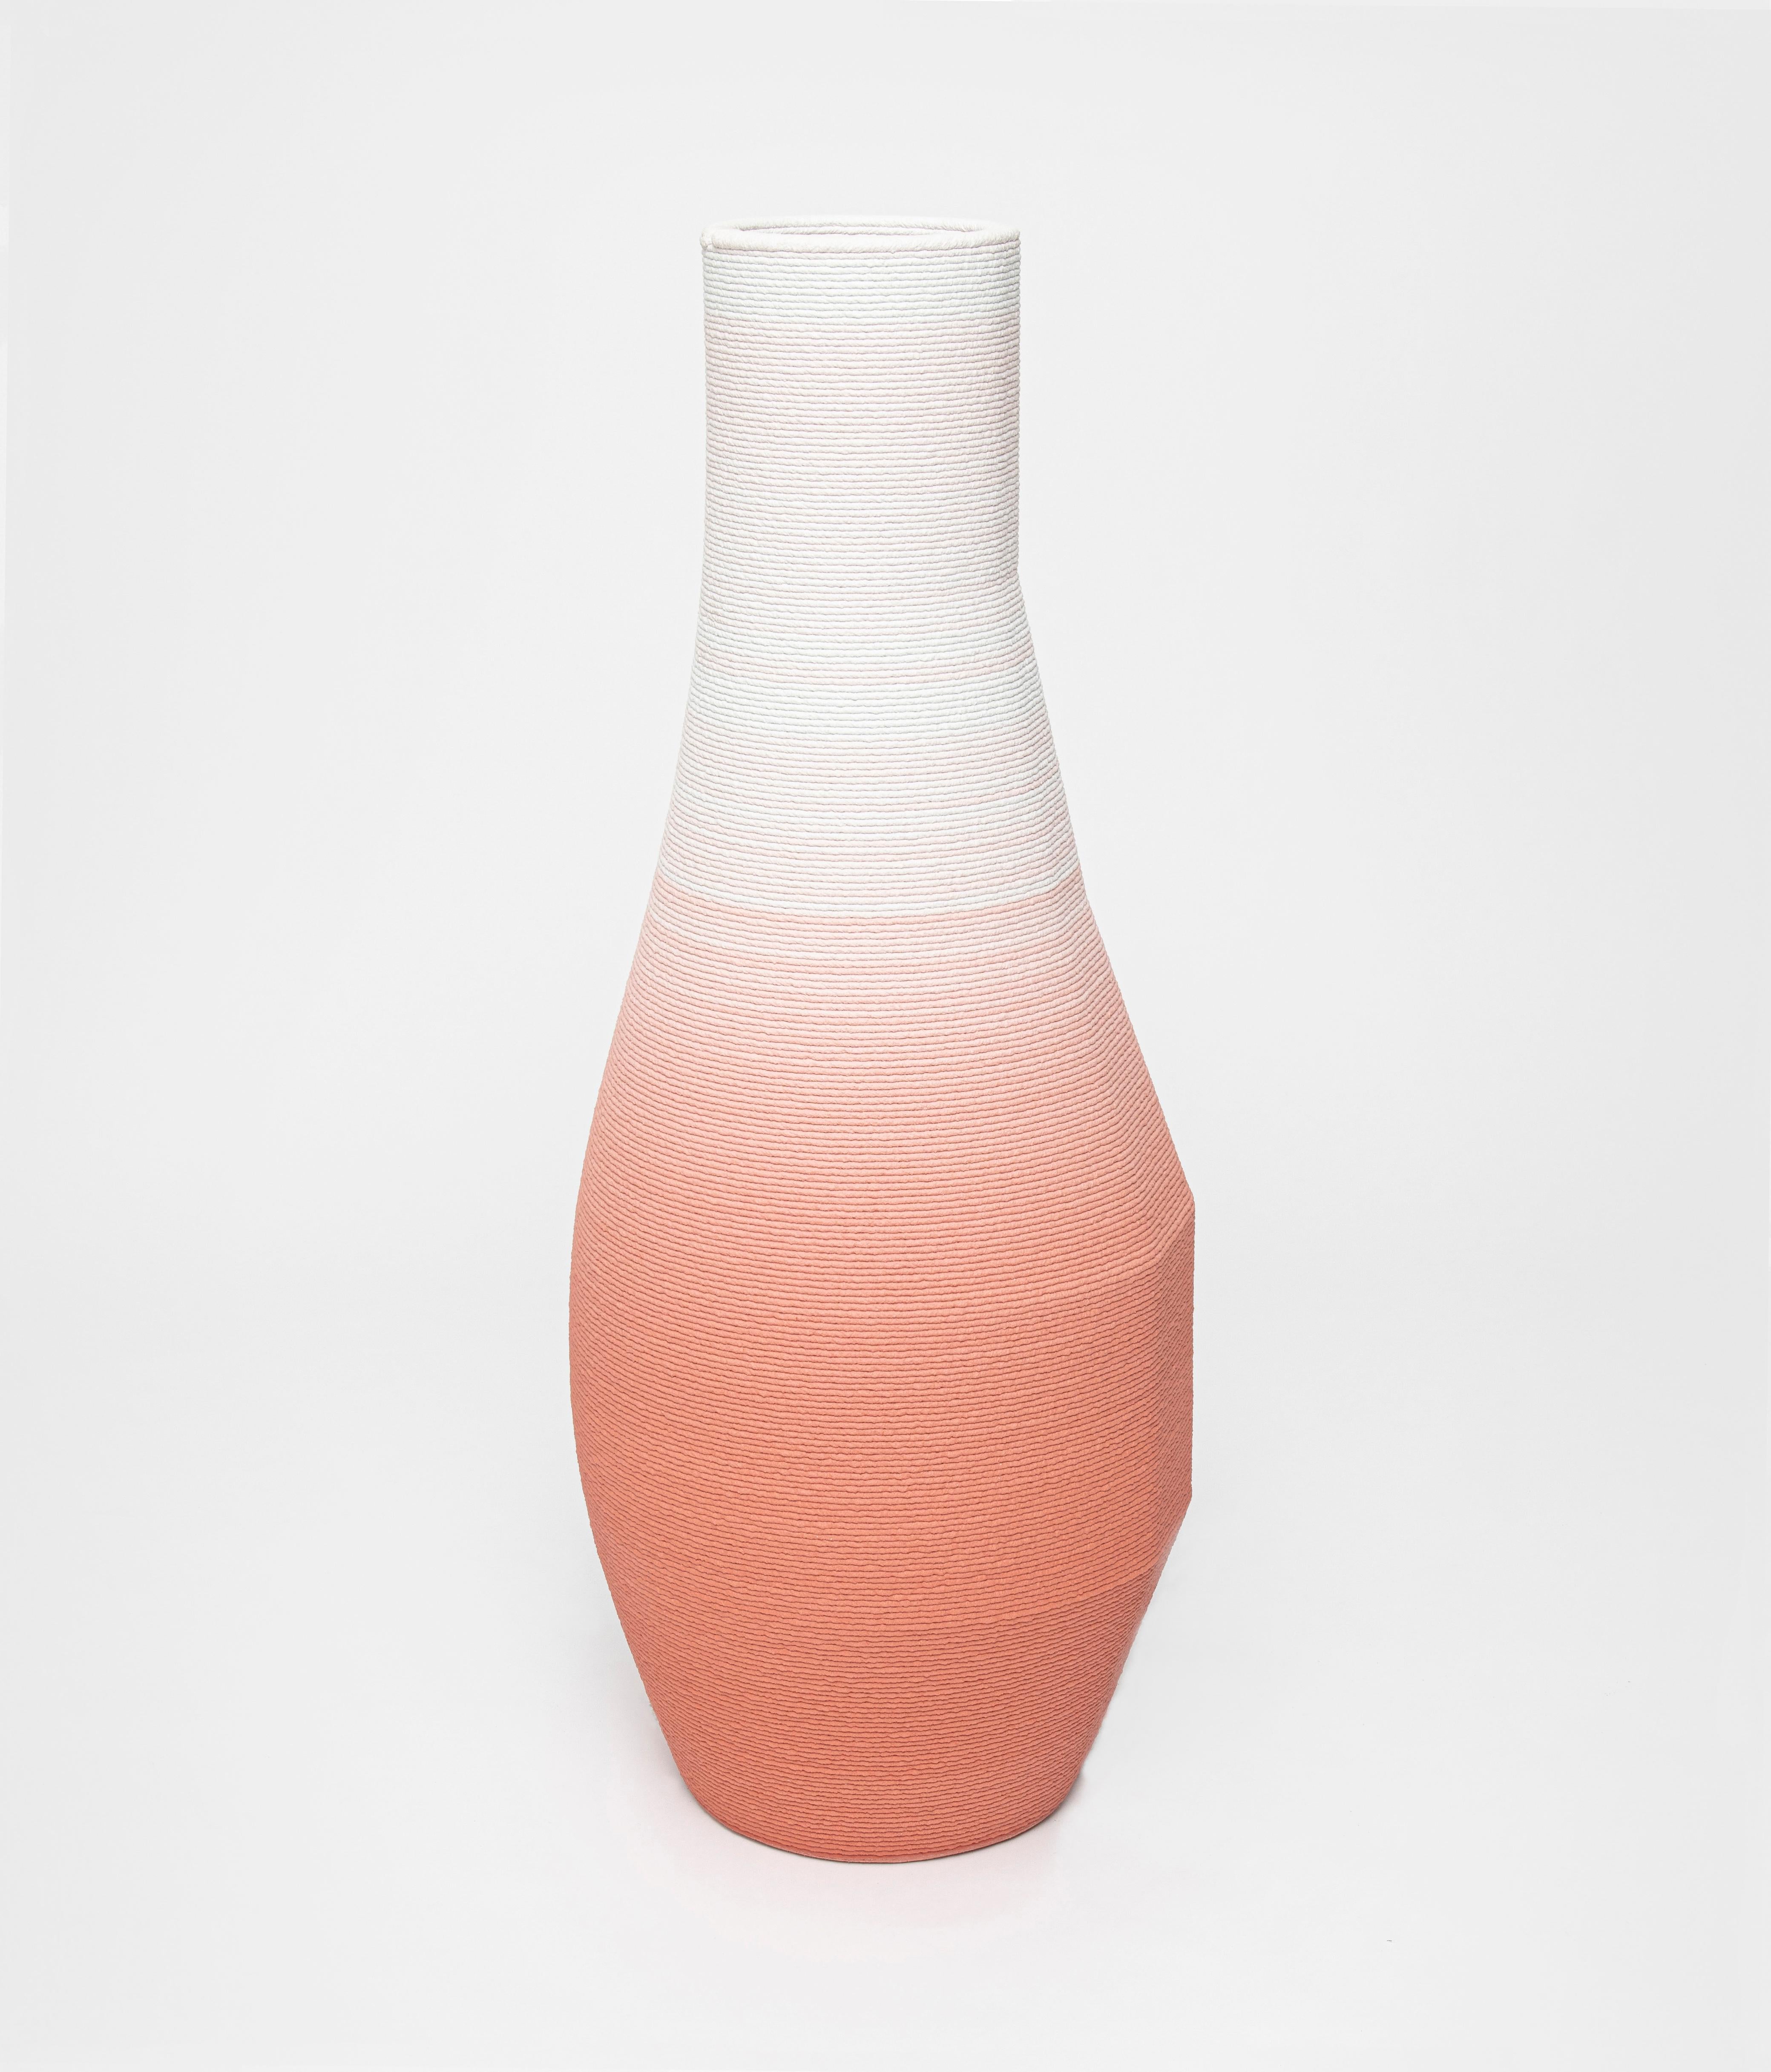 Austrian Set of 3 Large Concrete Gradient Vase by Philipp Aduatz For Sale